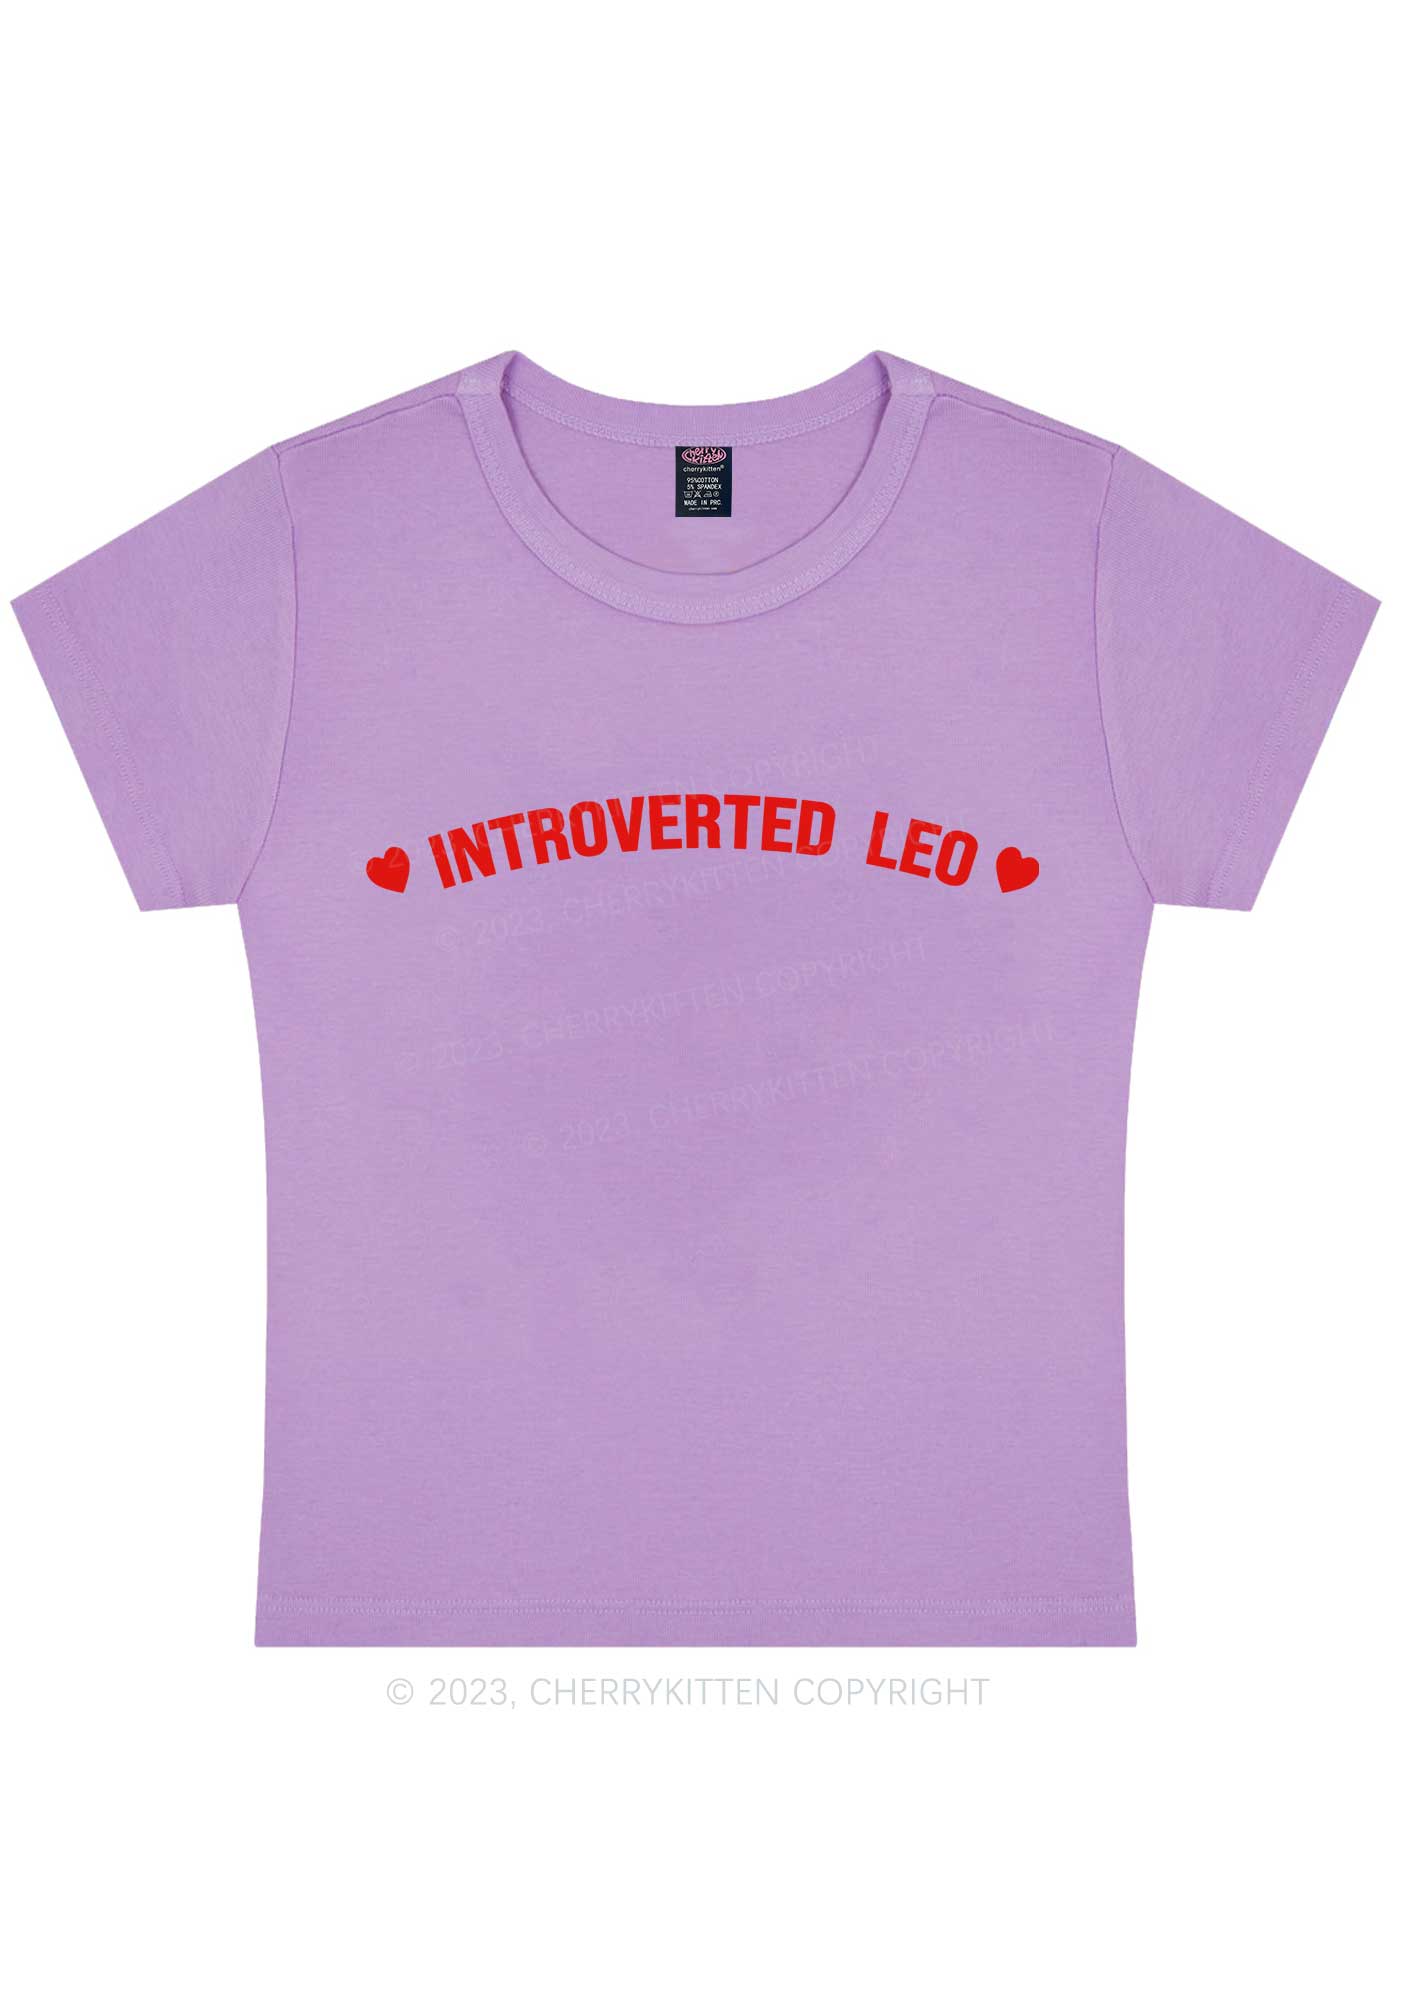 Introverted Leo Y2K Baby Tee Cherrykitten